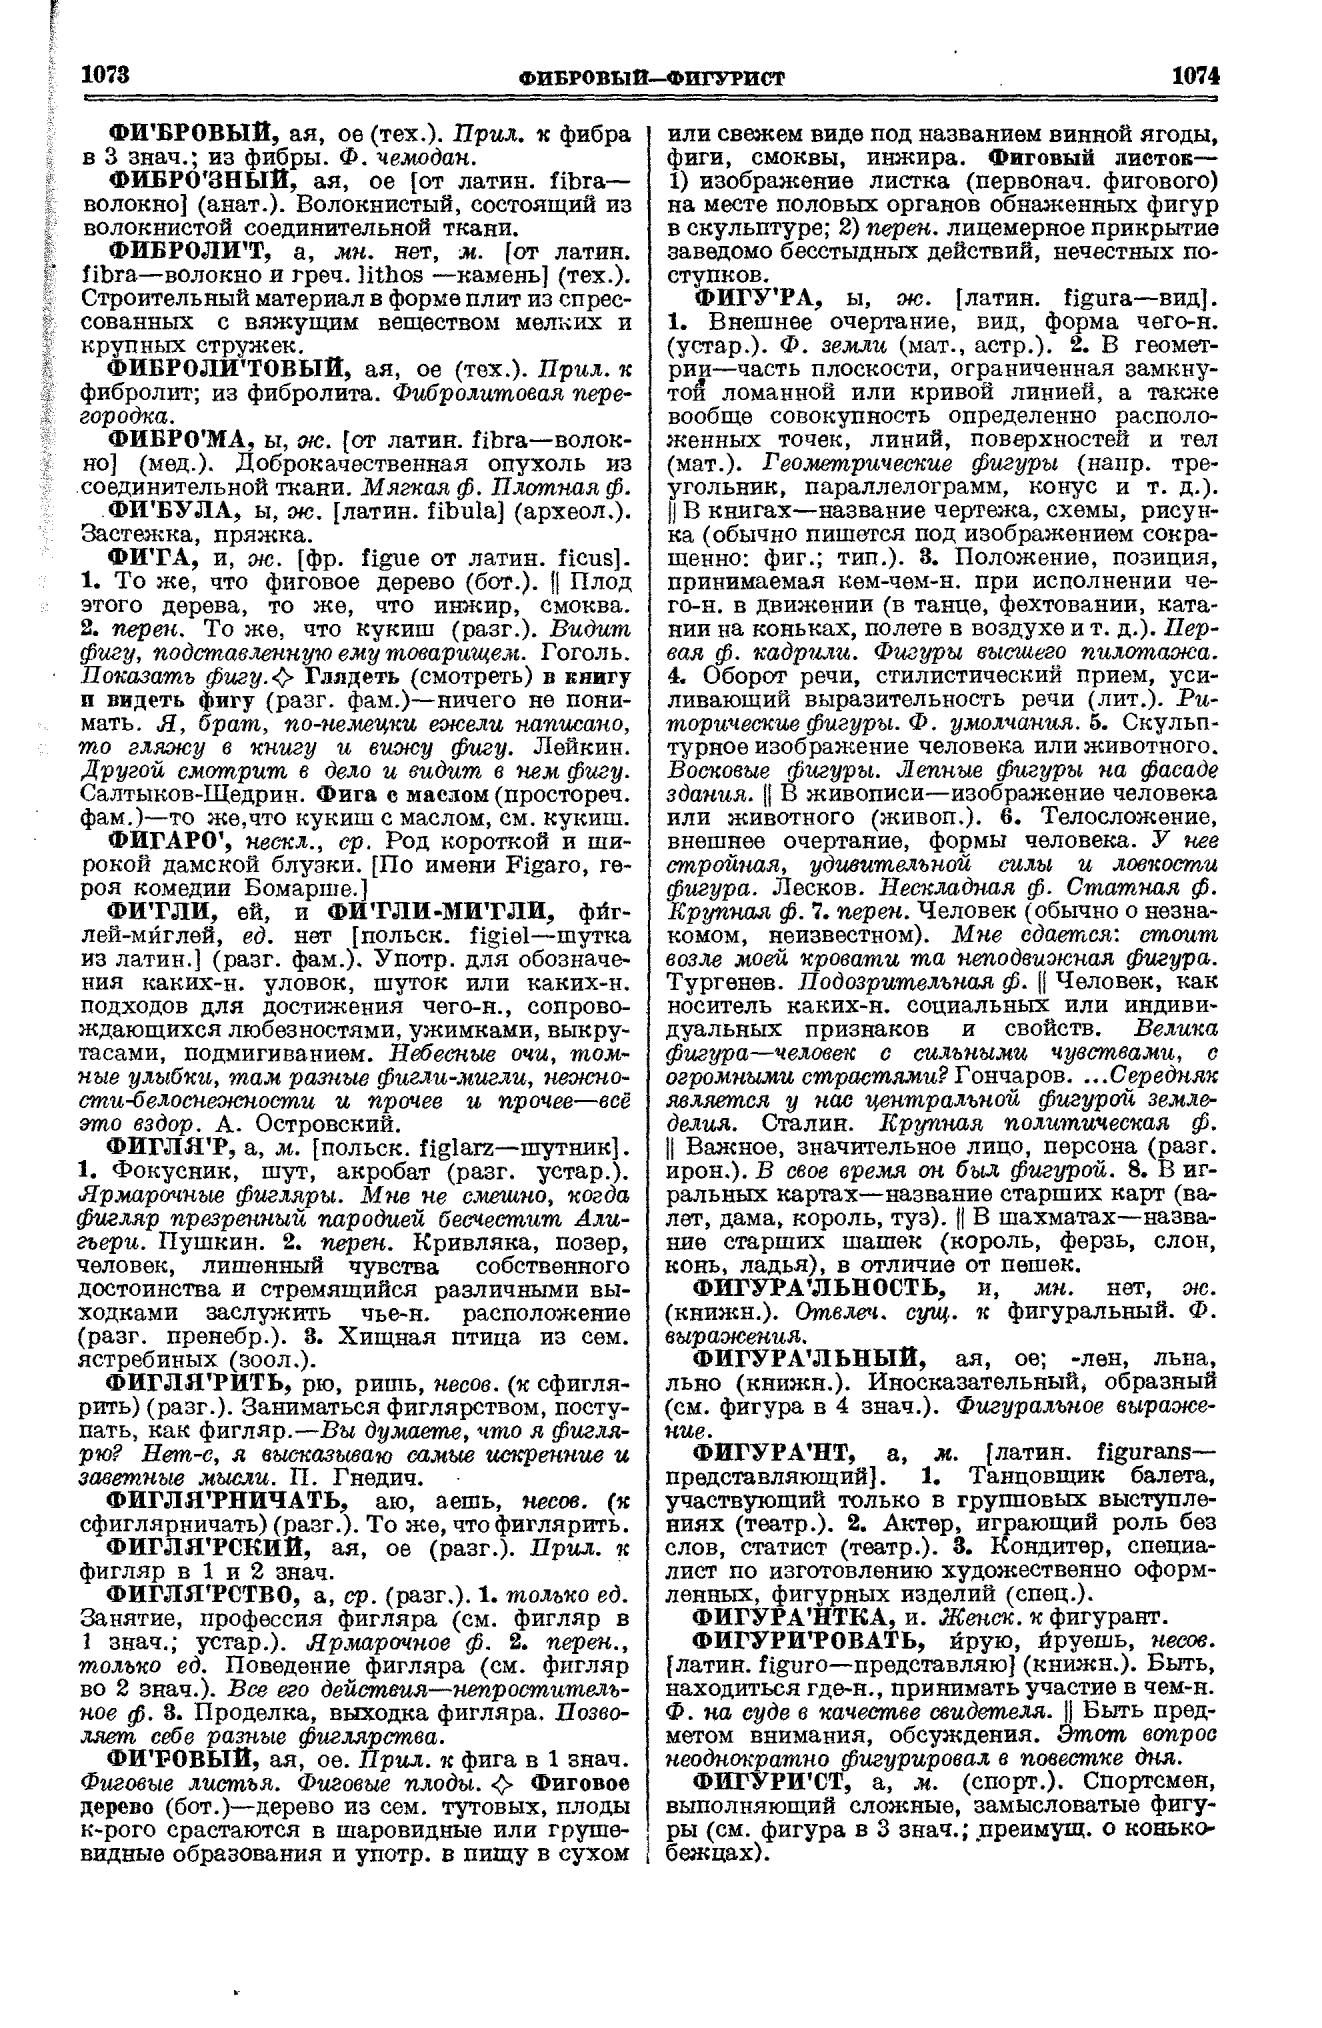 Фотокопия pdf / скан страницы 537 толкового словаря Ушакова (том 1)